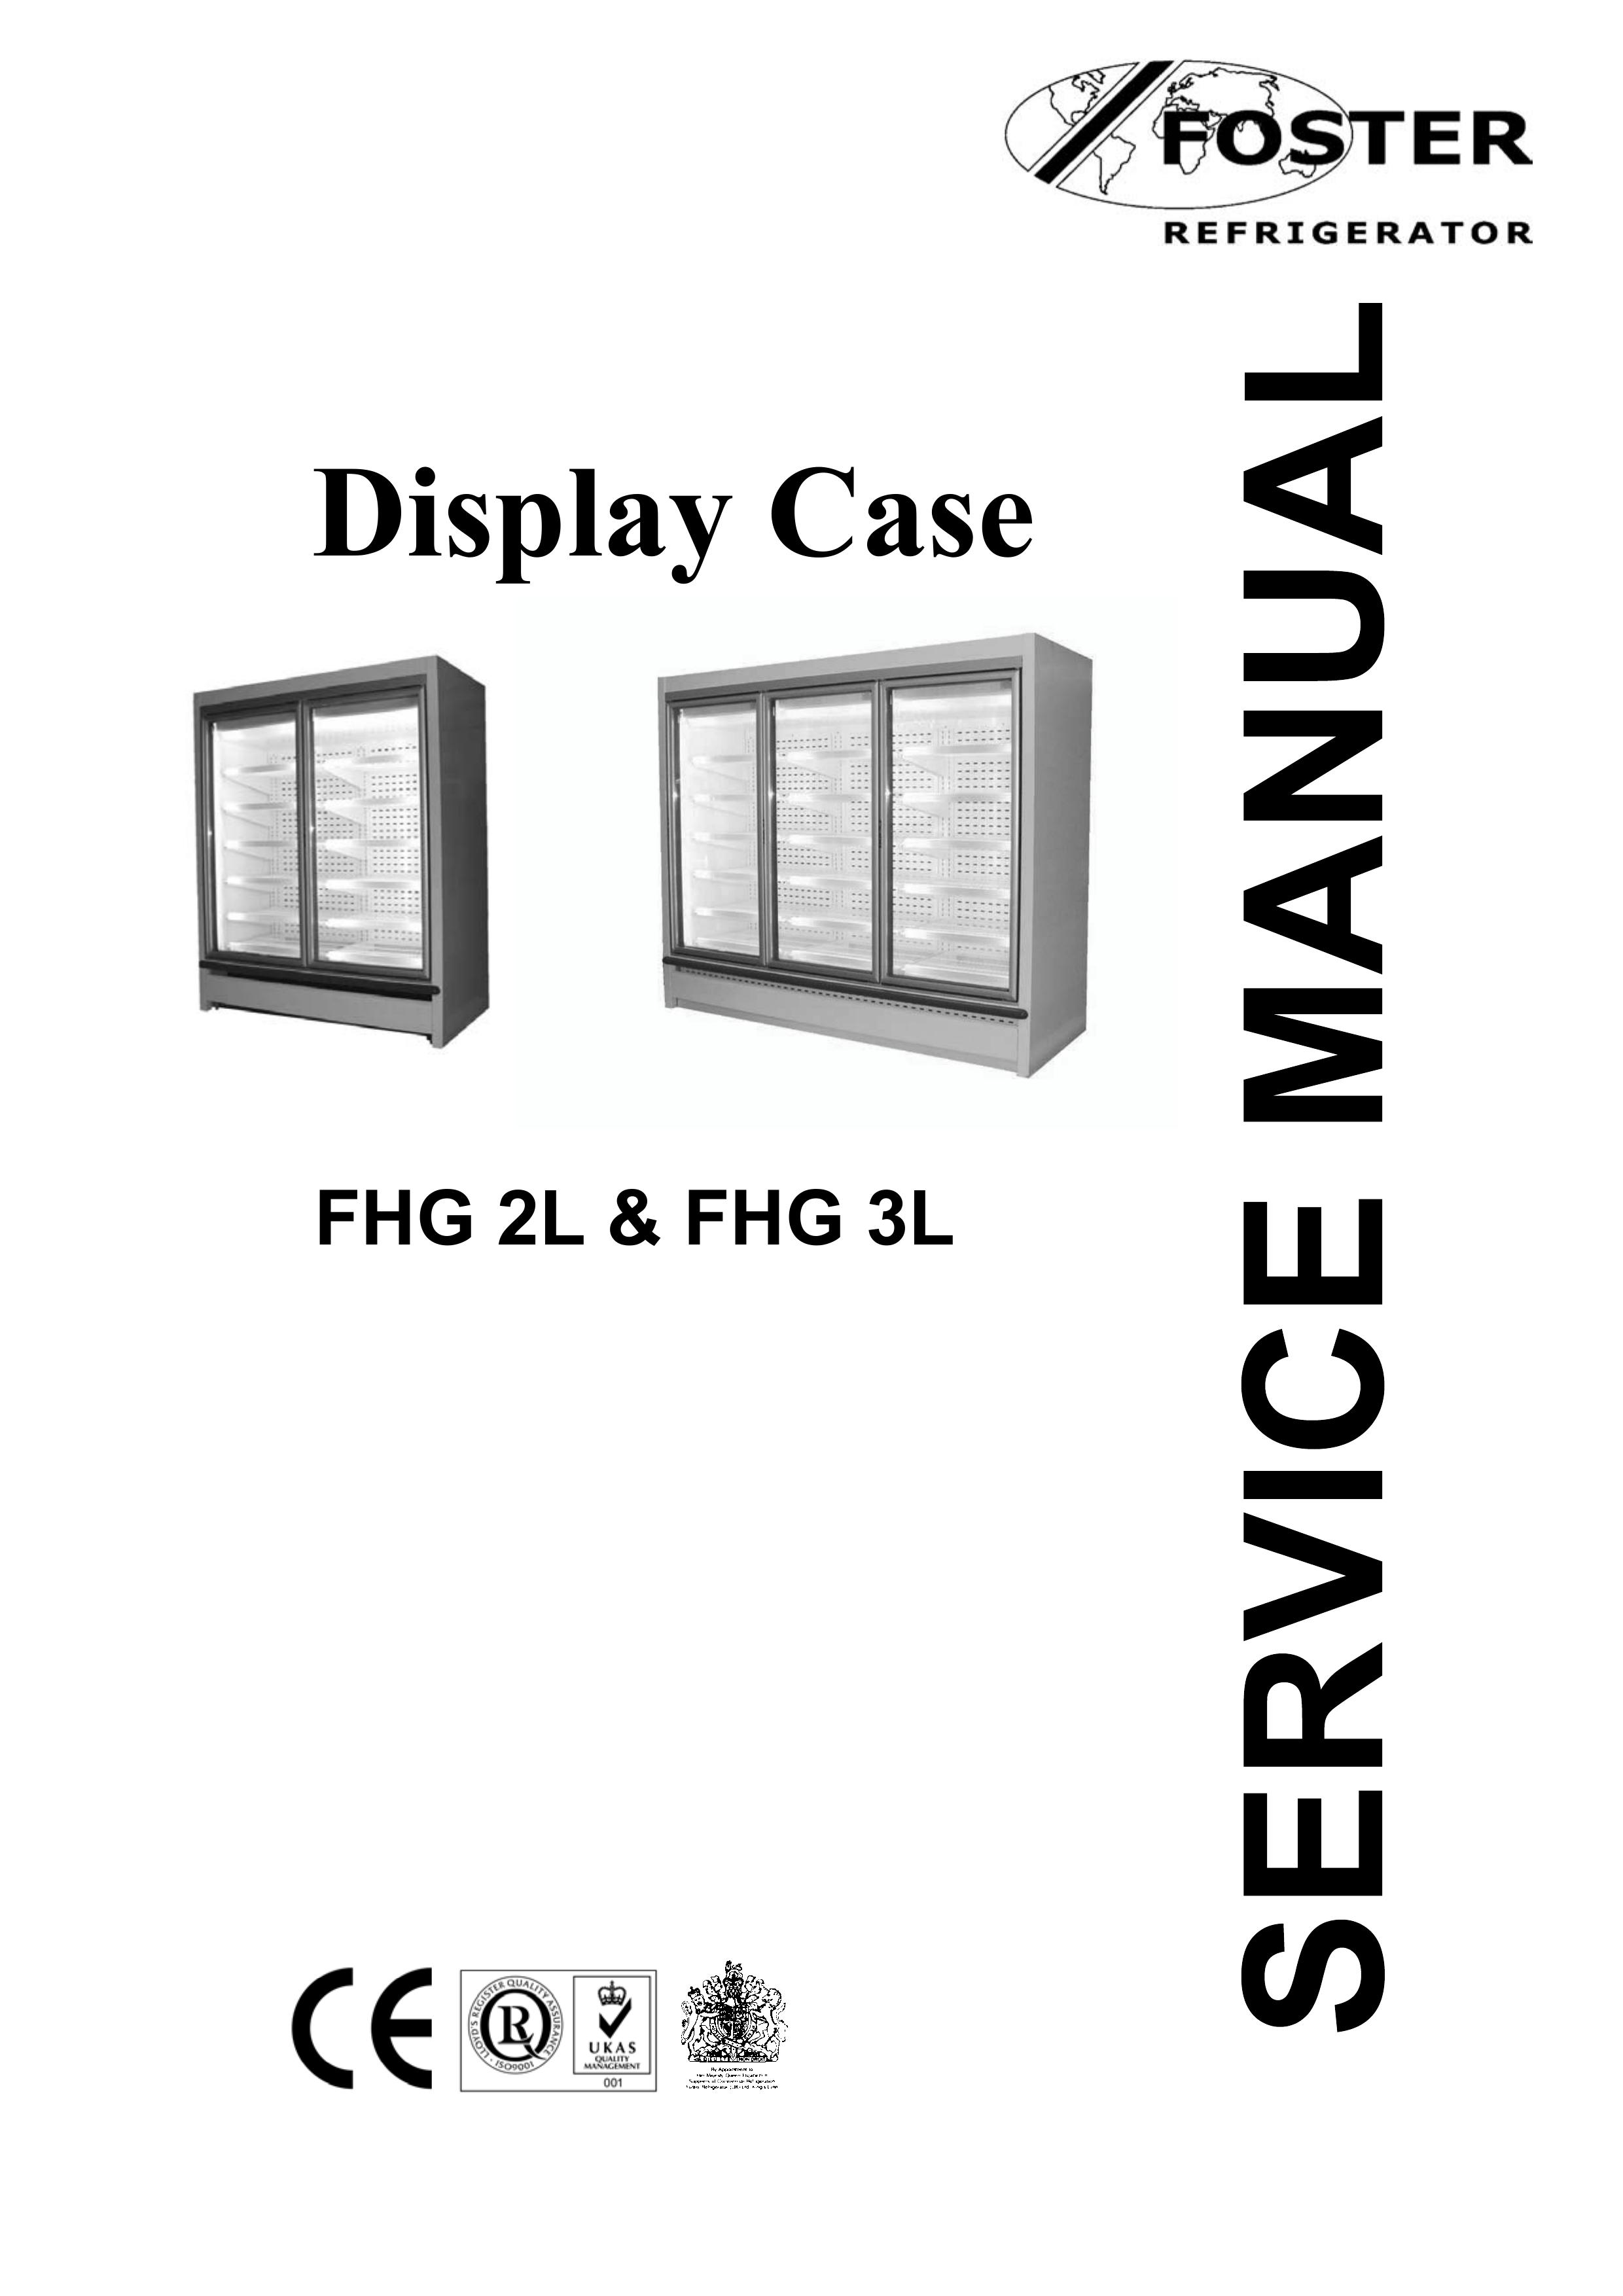 Foster FHG 3L Refrigerator User Manual